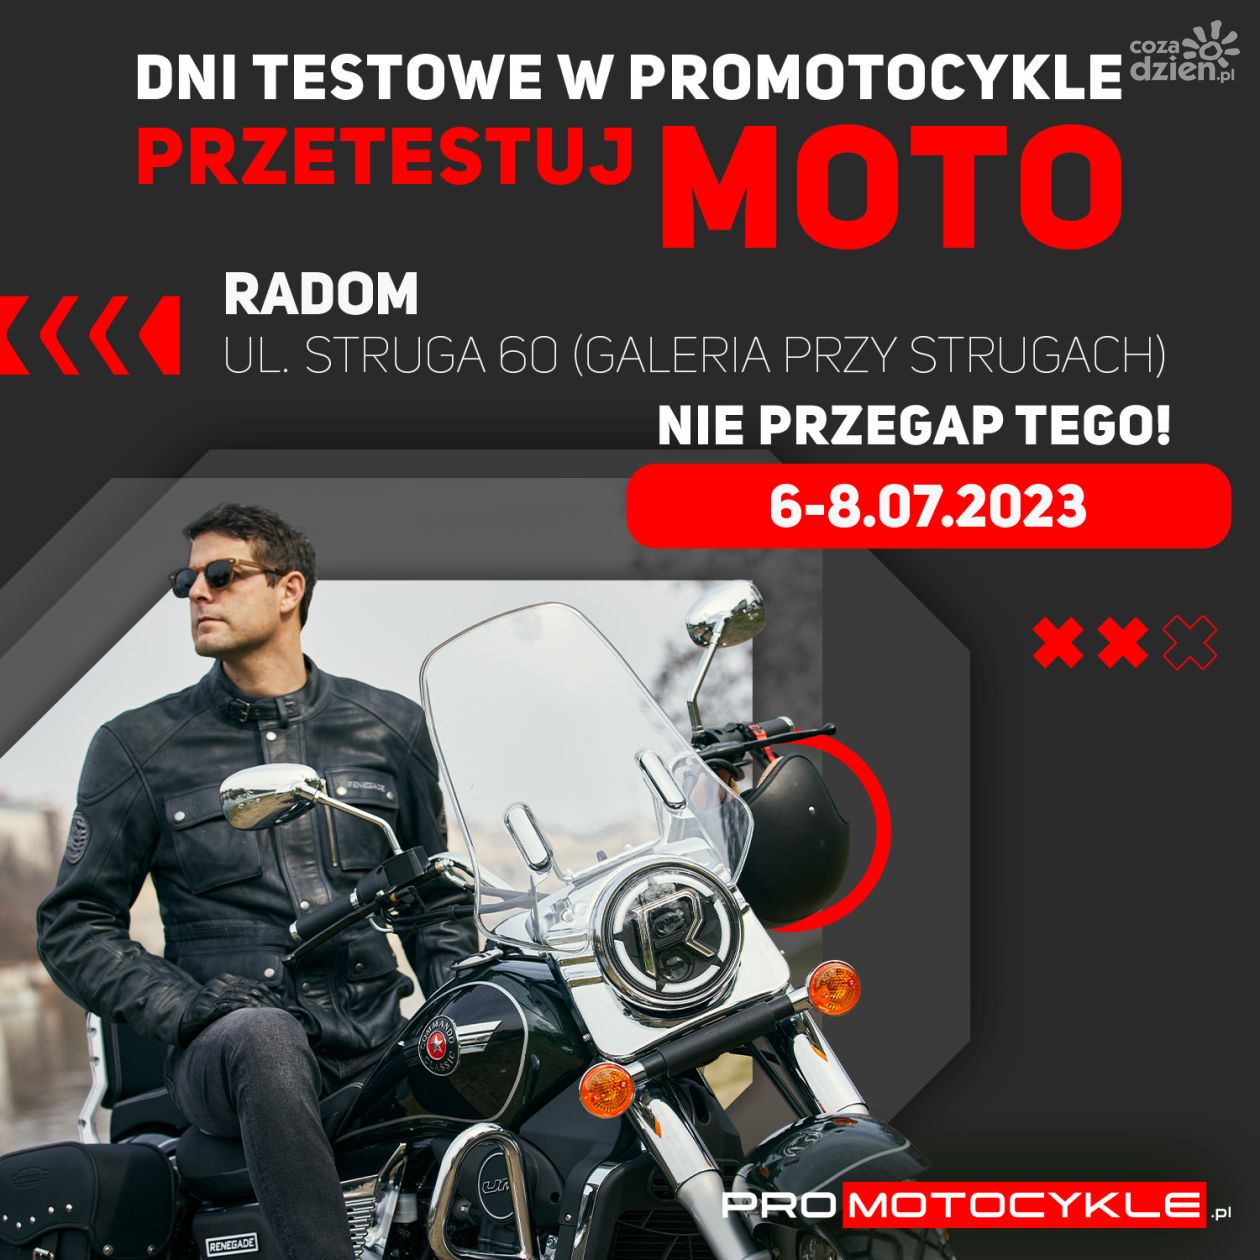 Odwiedź sklep Promotocykle.pl i przetestuj dowolny motocykl!